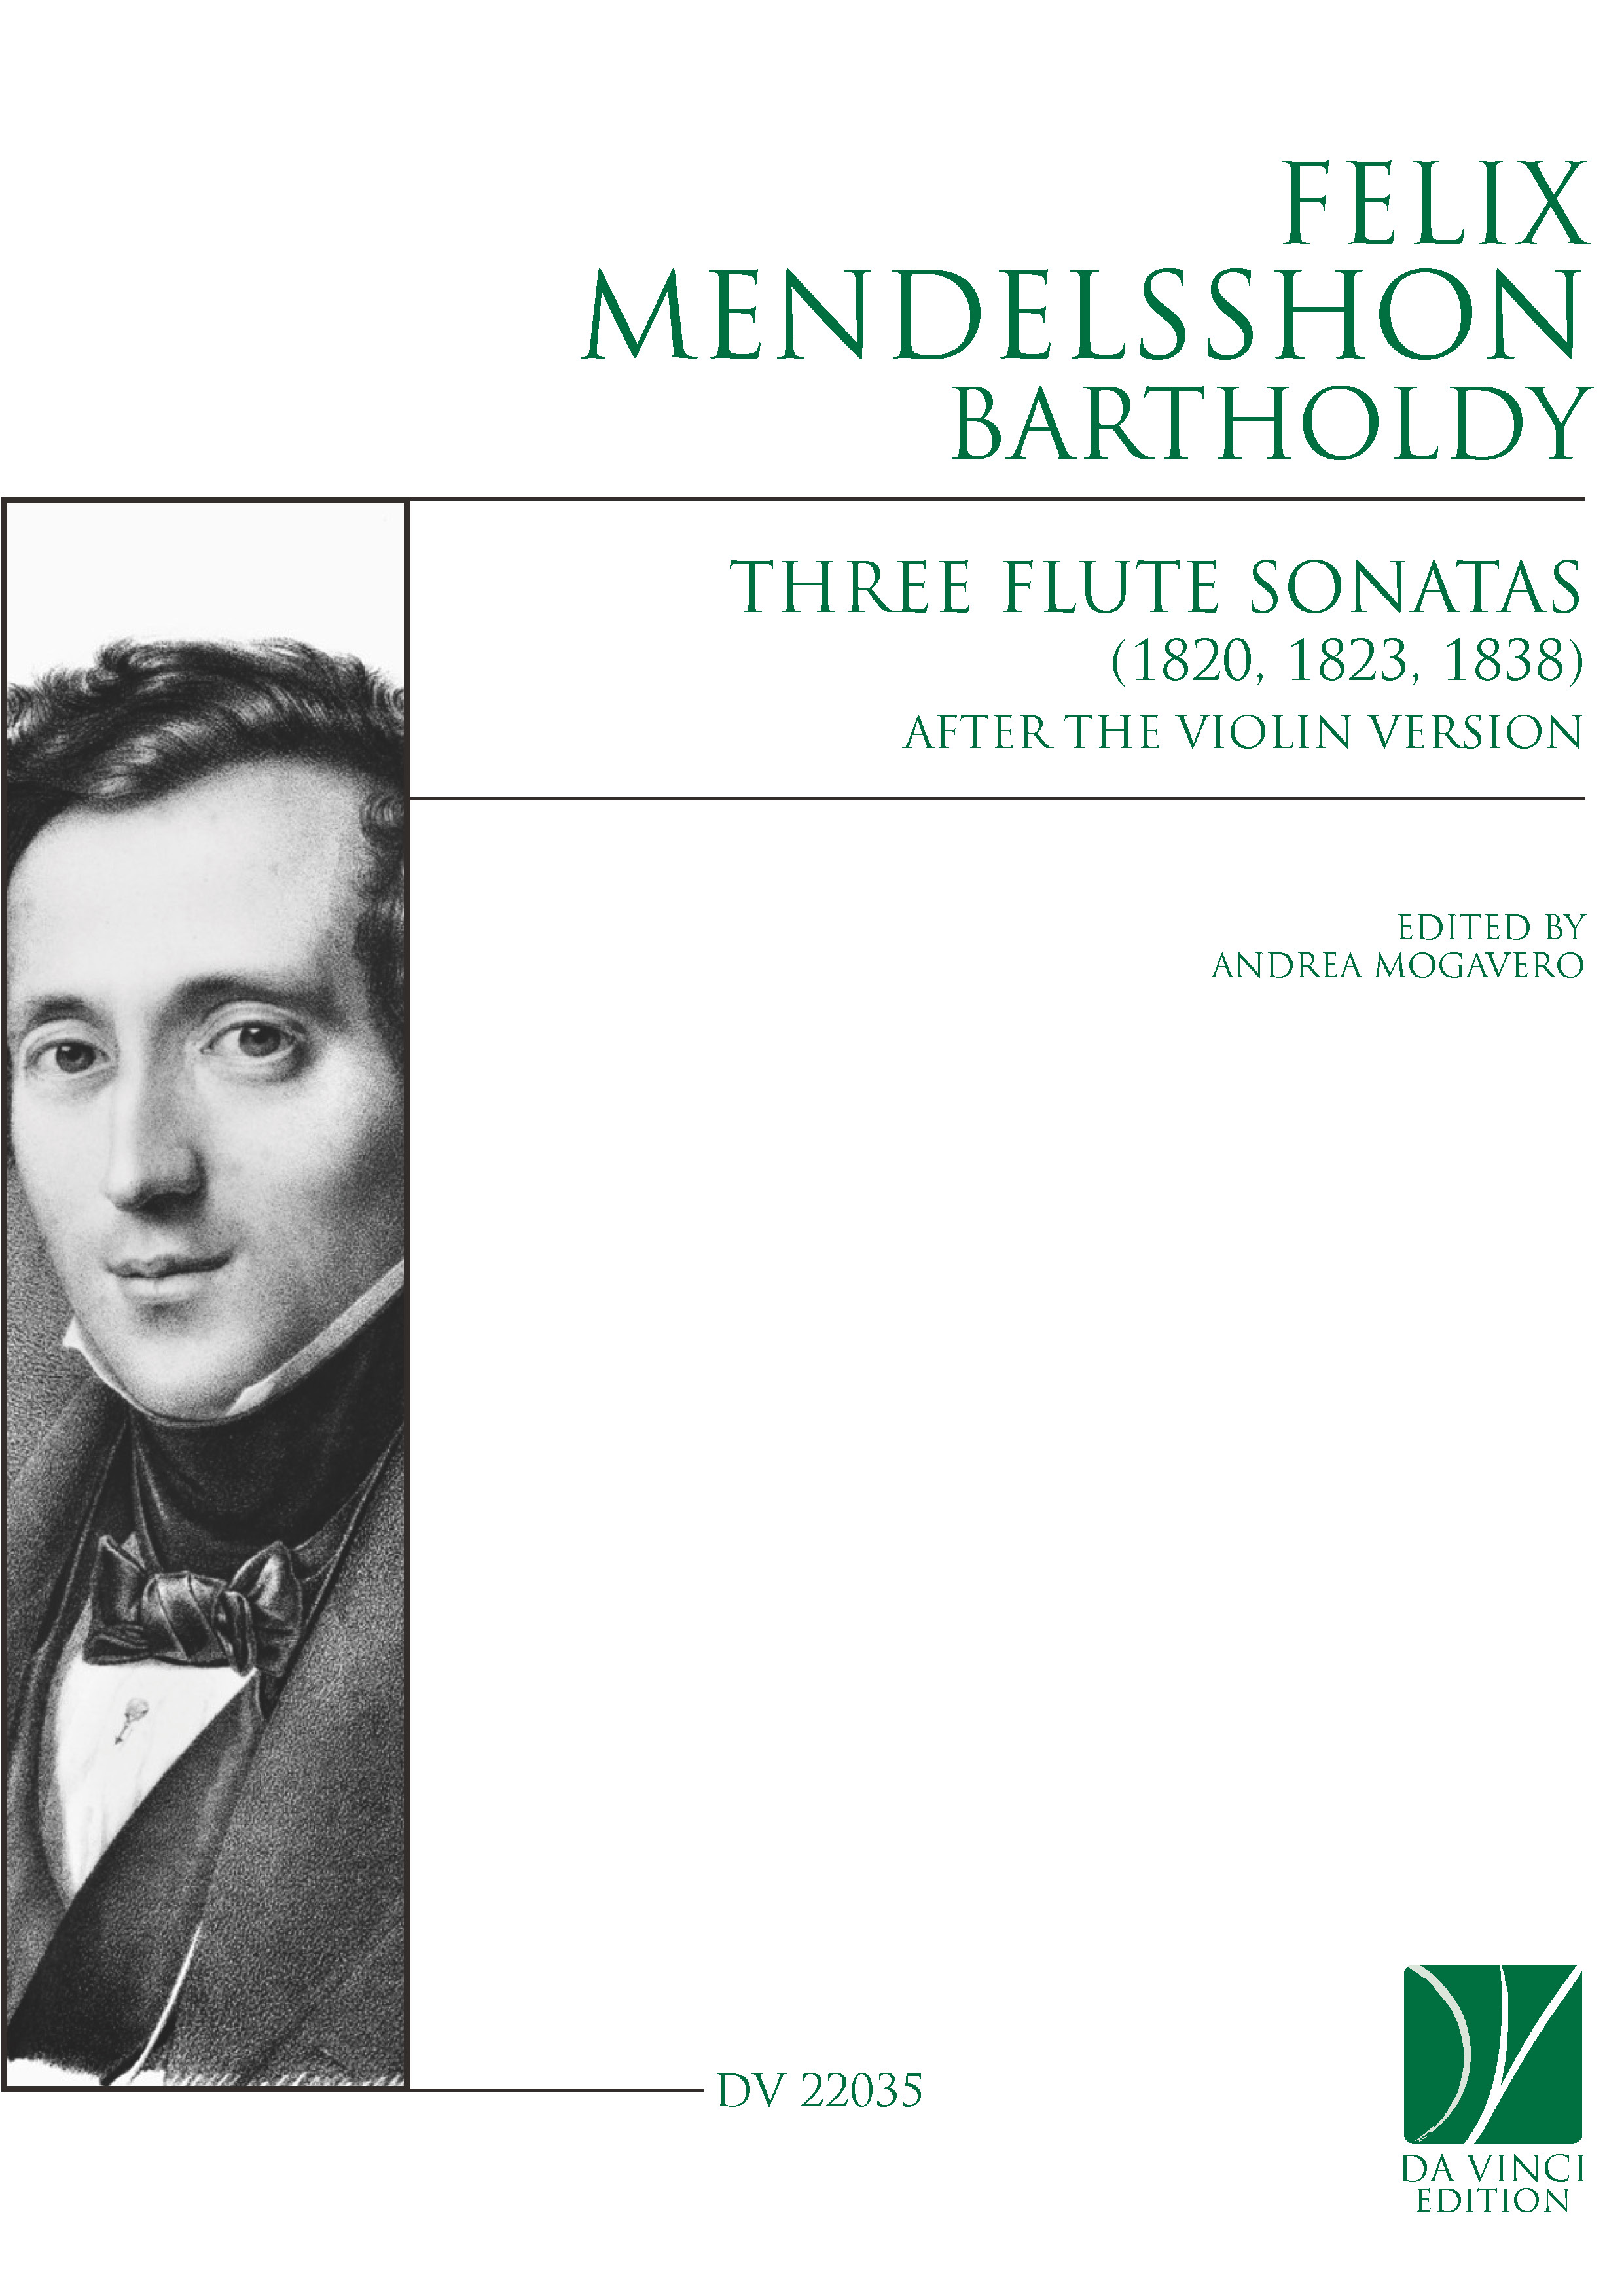 DV 22035 - Cover (Mendelssohn - Flute Sonatas)